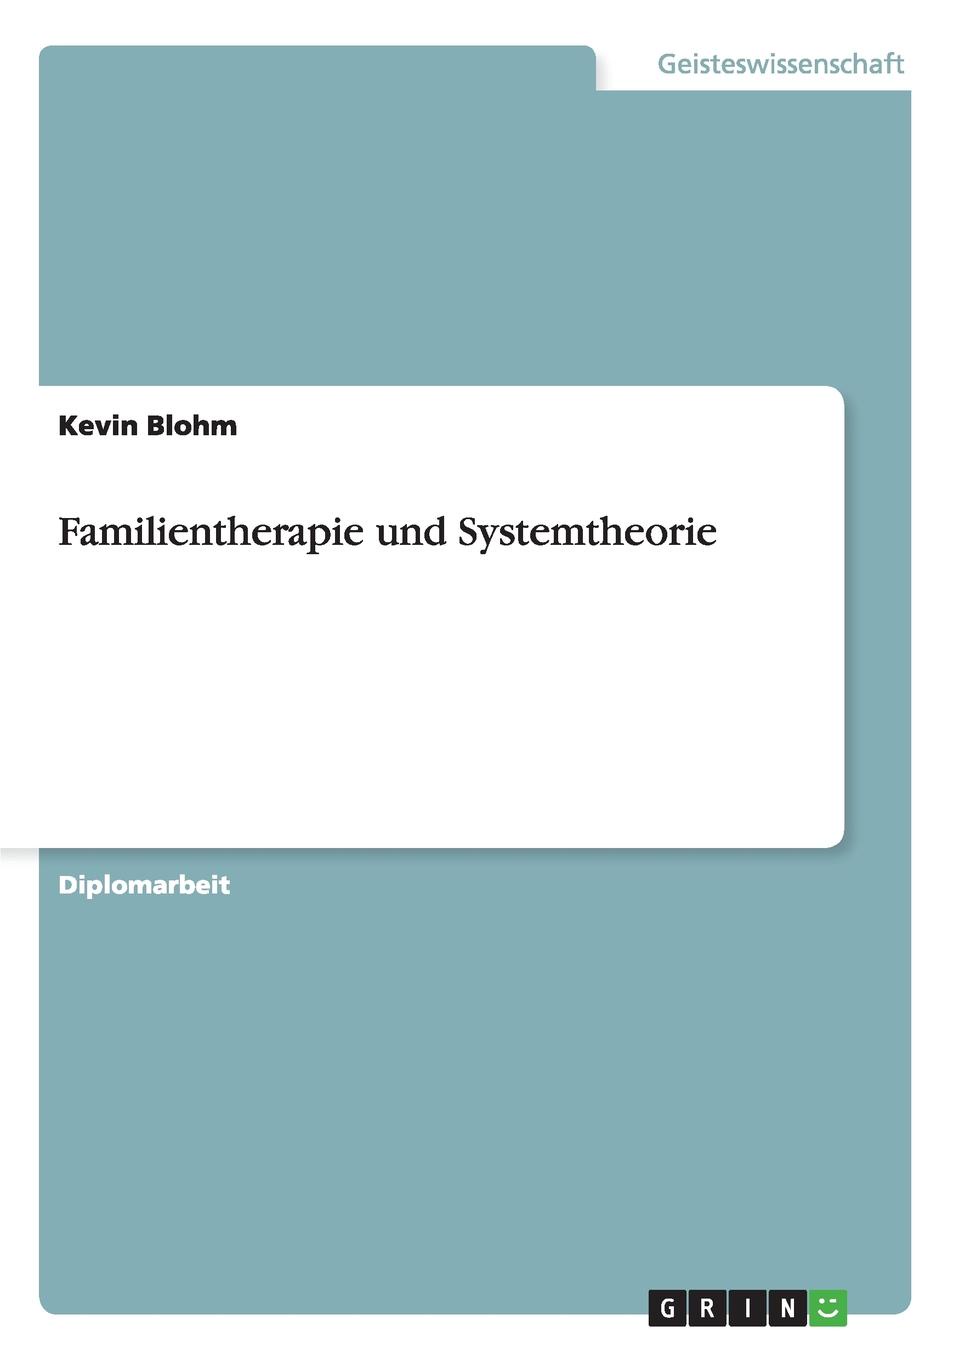 Familientherapie und Systemtheorie